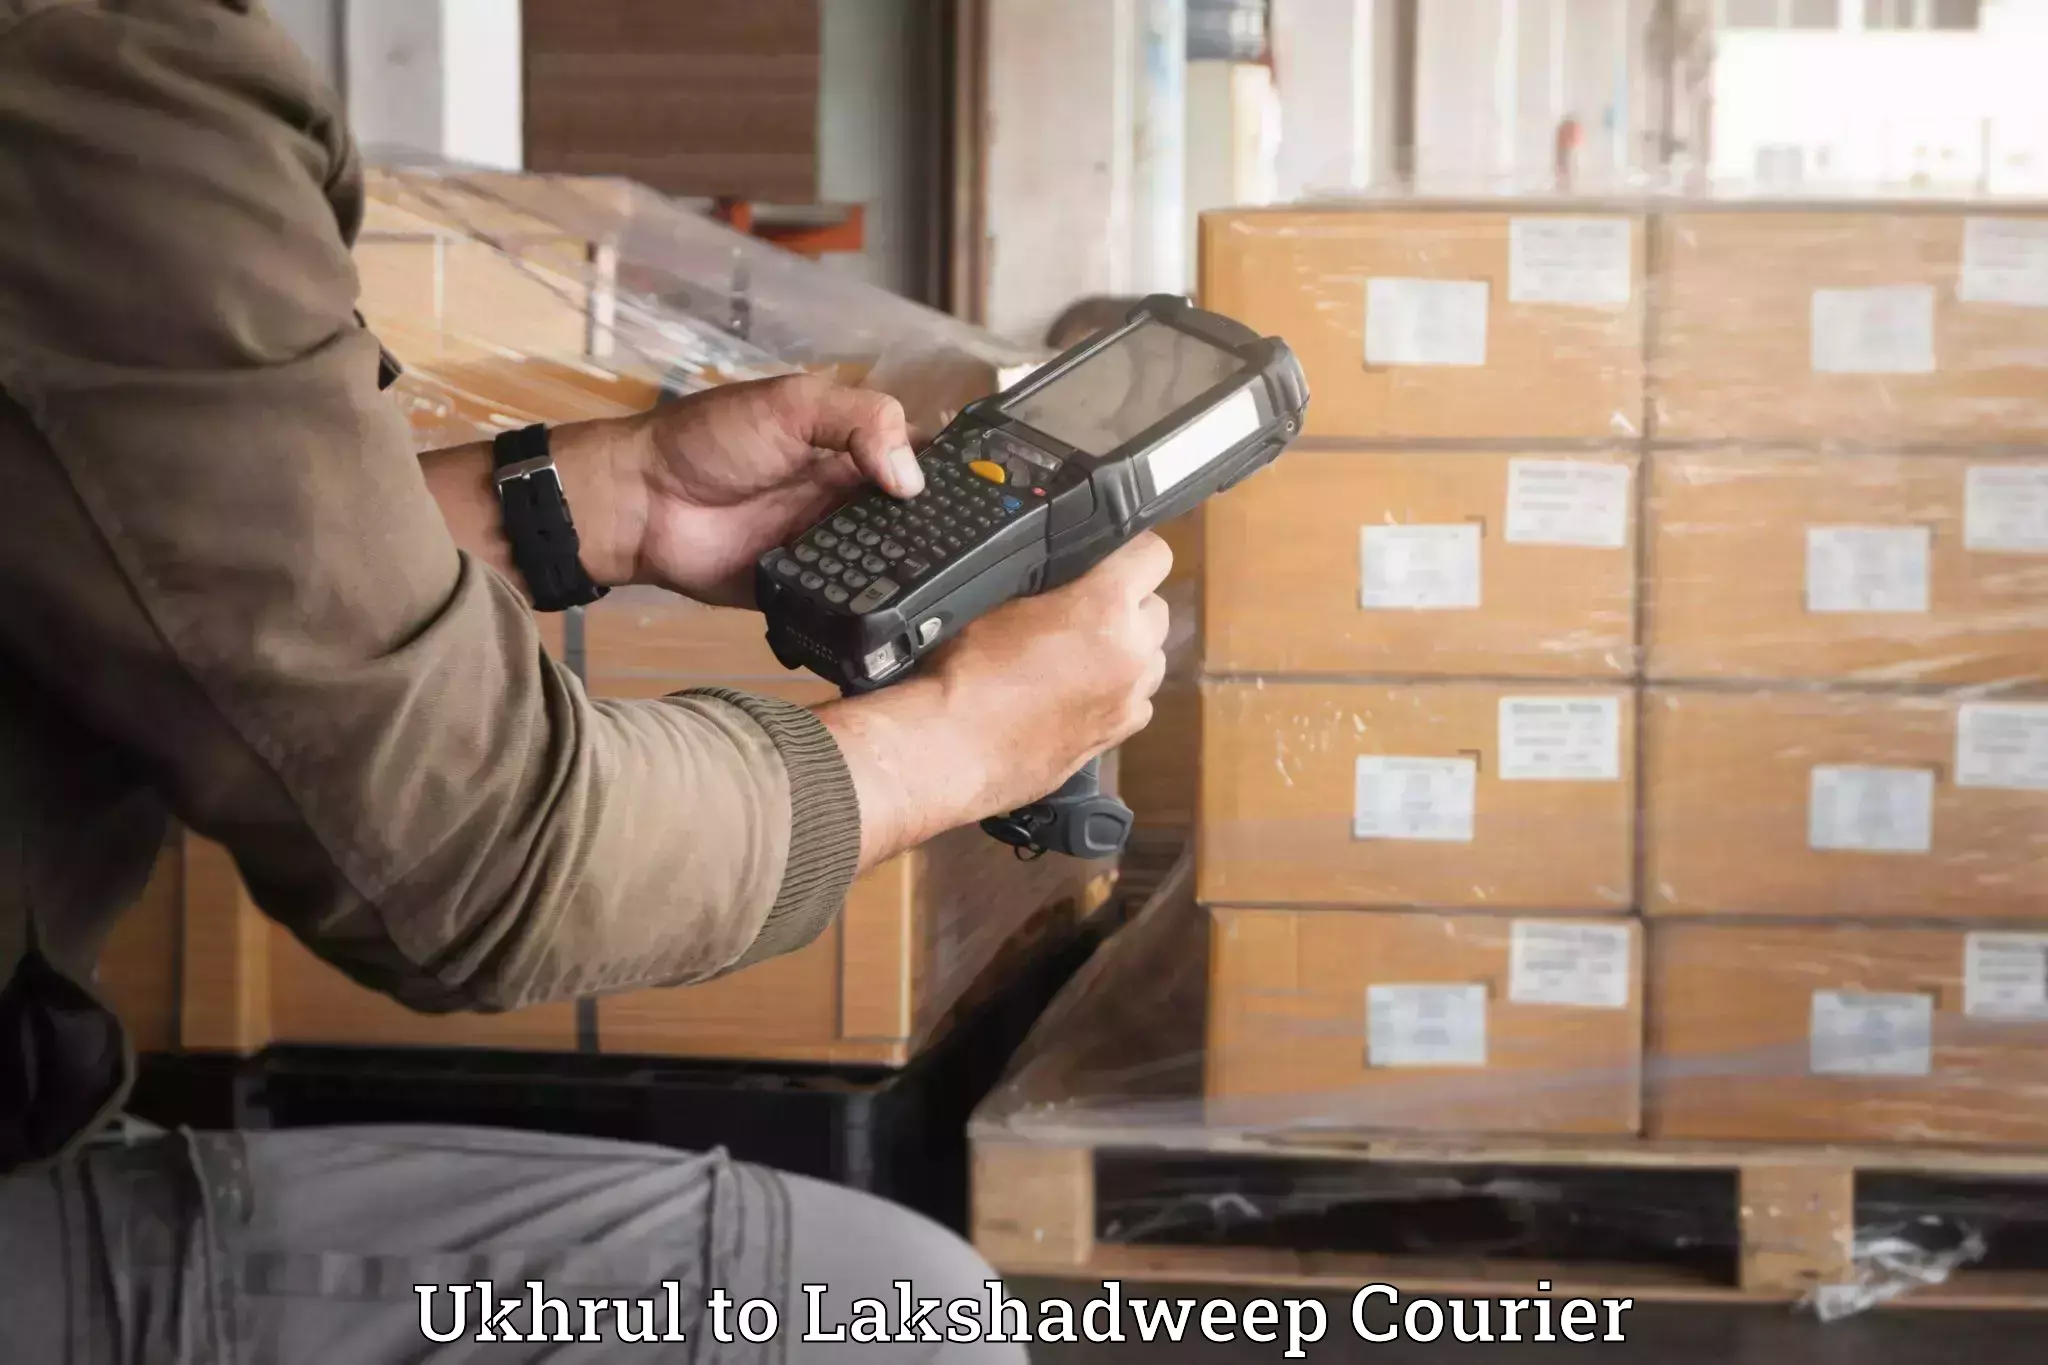 Personalized luggage shipping Ukhrul to Lakshadweep